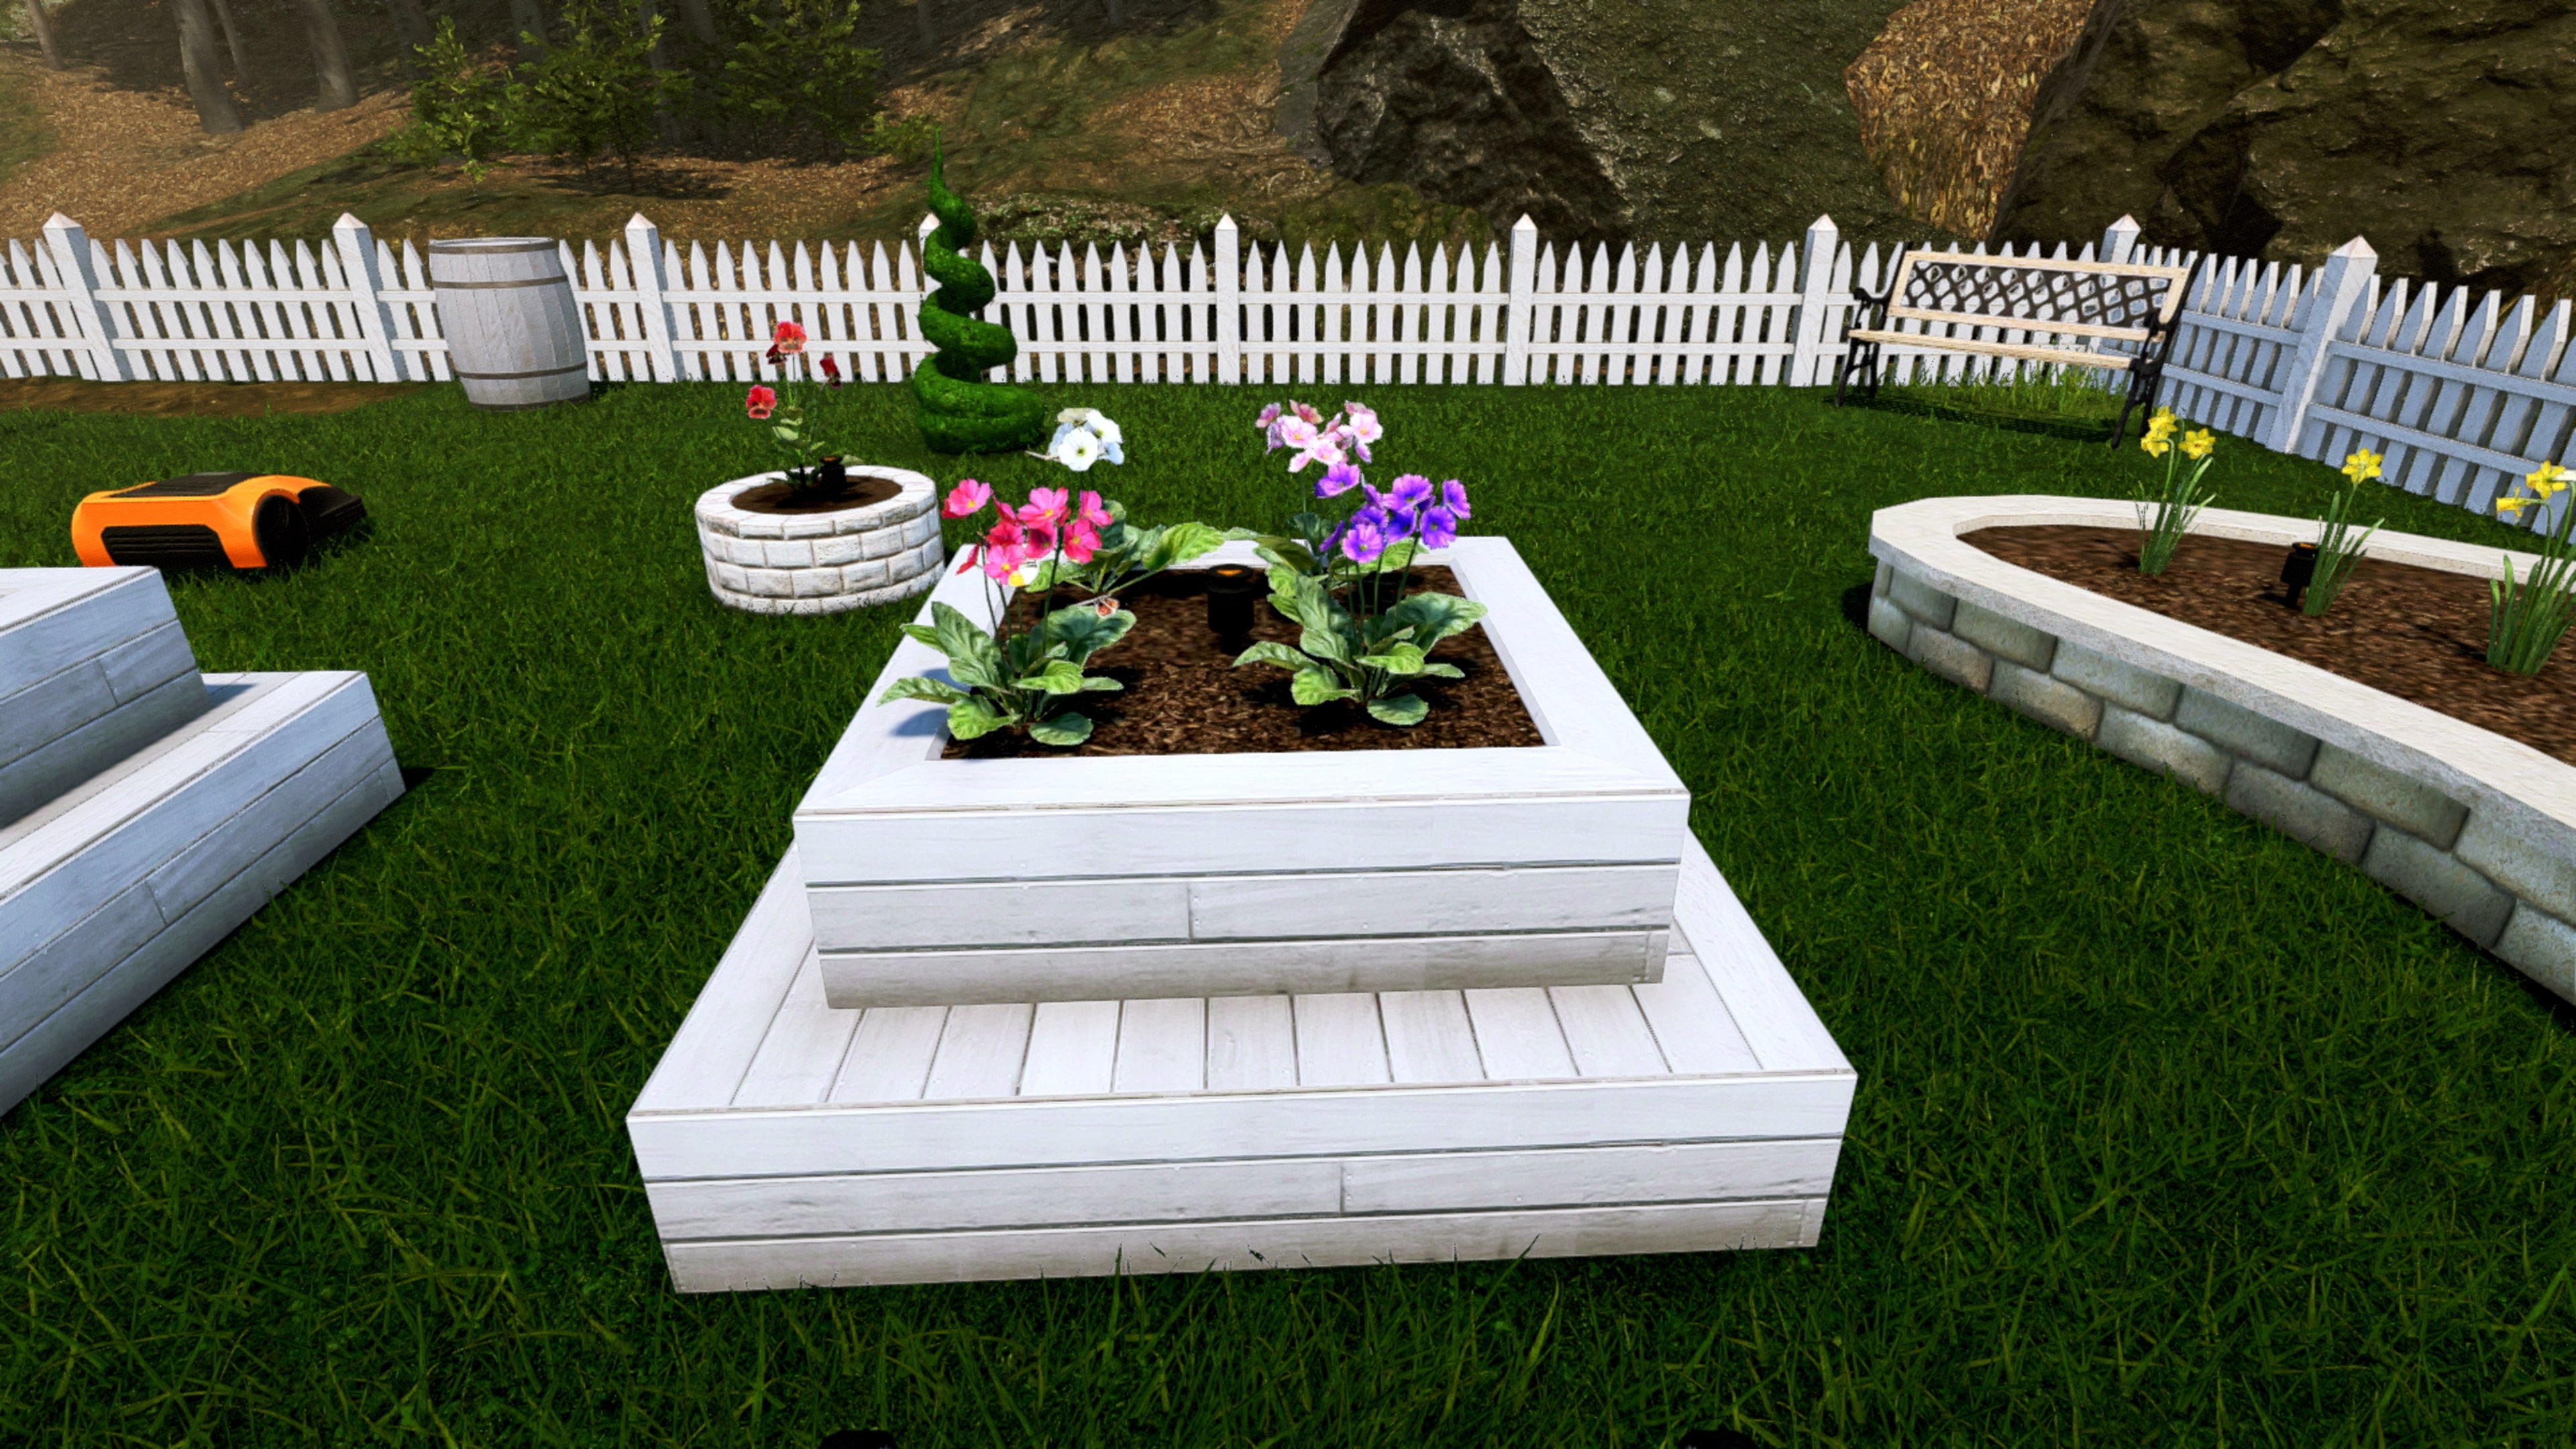 Garden Simulator: realize o sonho de construir um jardim só seu